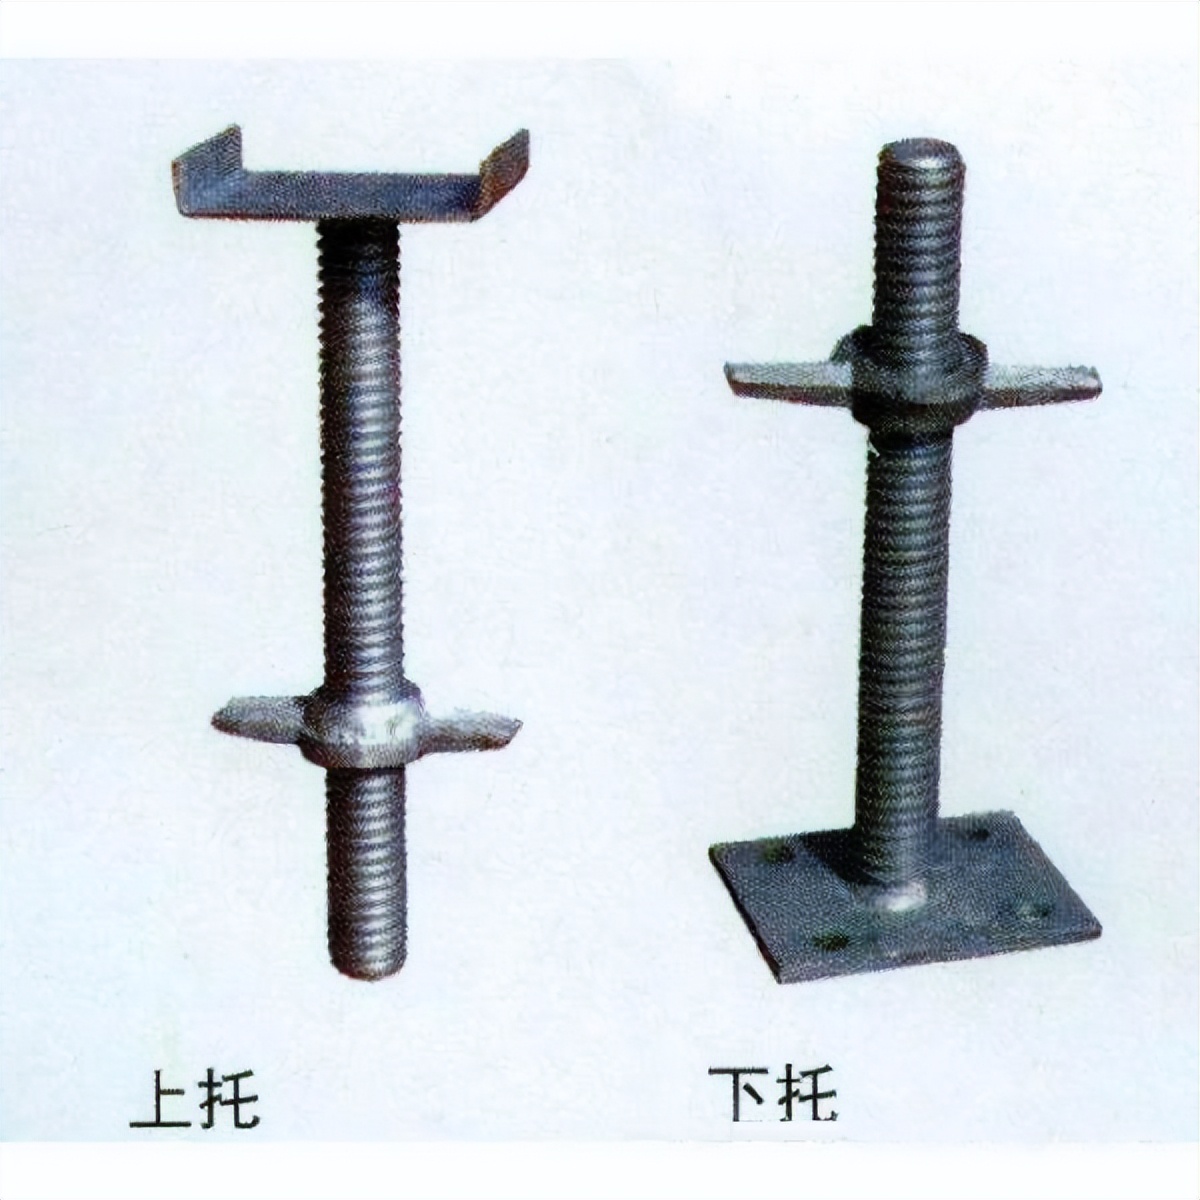 顶托和底托在施工的过程与钢管和脚手架配合使用,起到调节脚手架和管